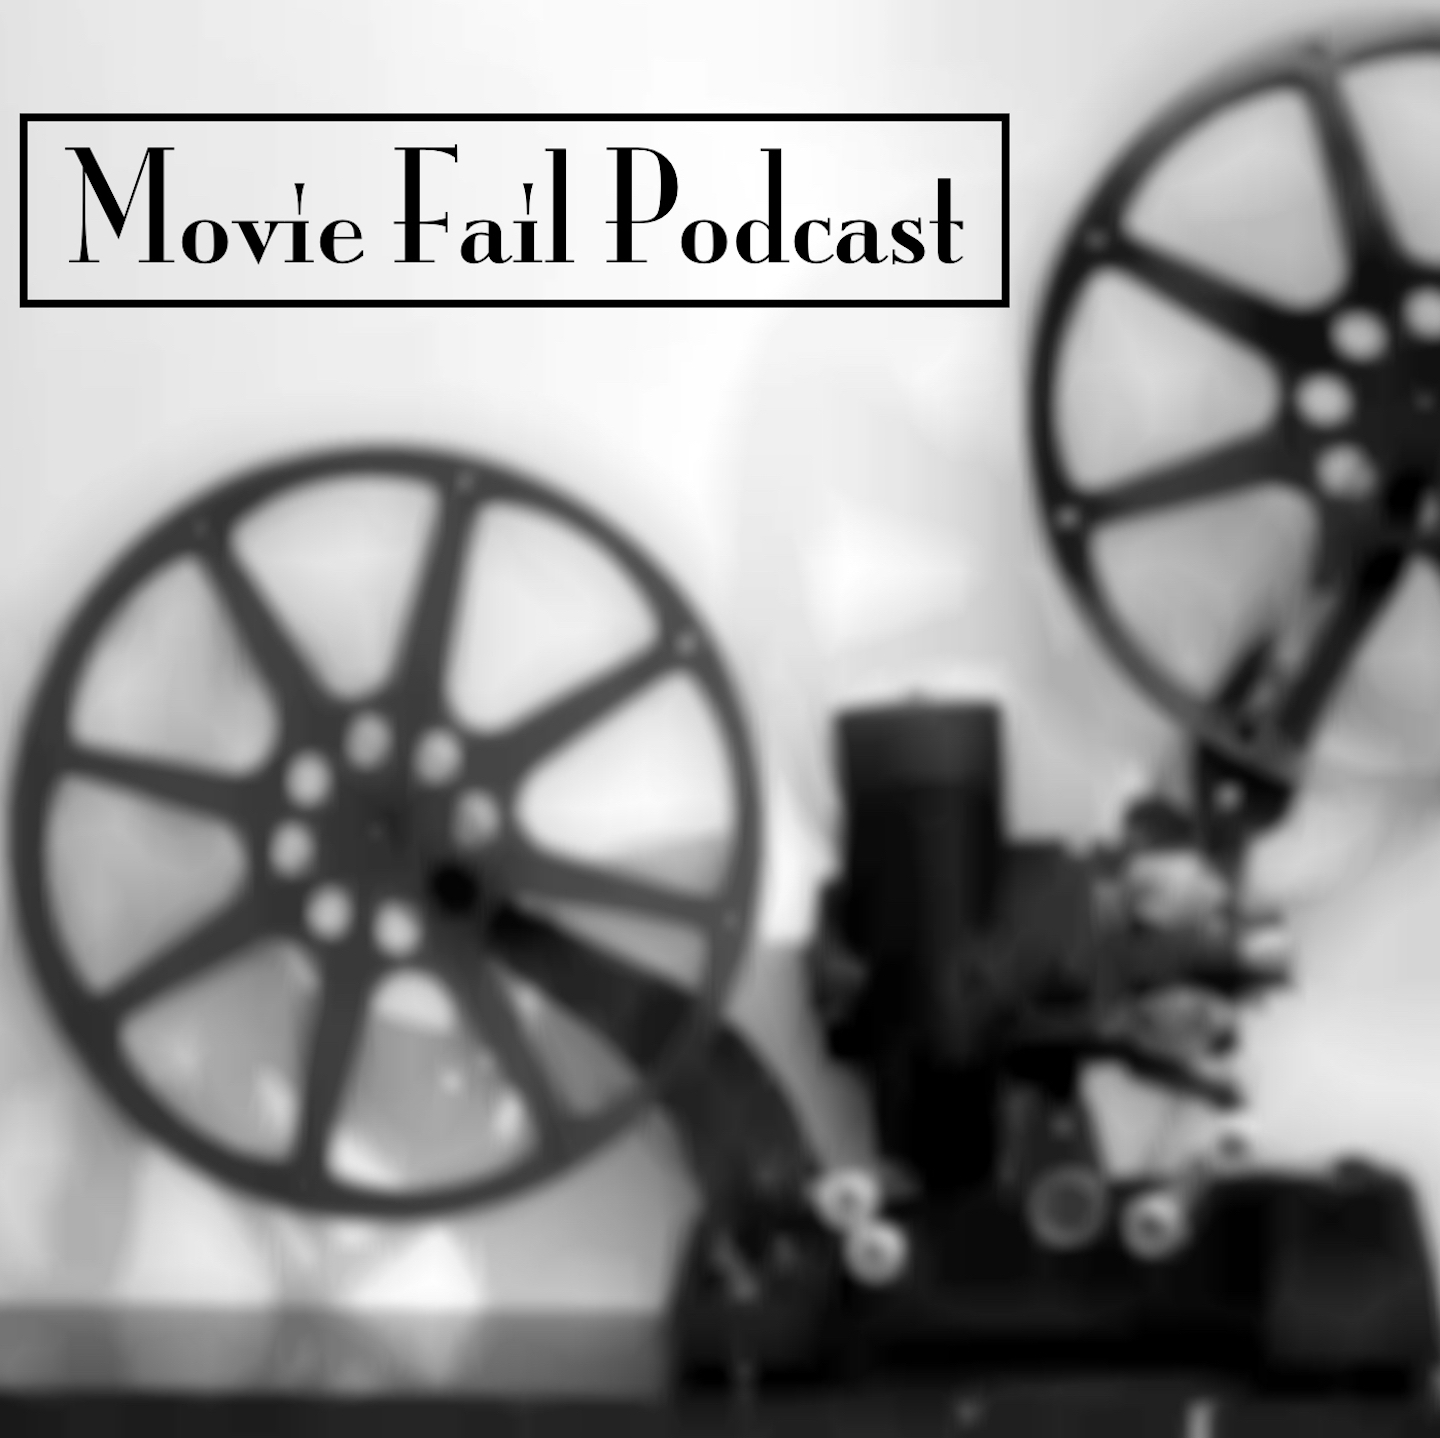 Movie Fail Podcast